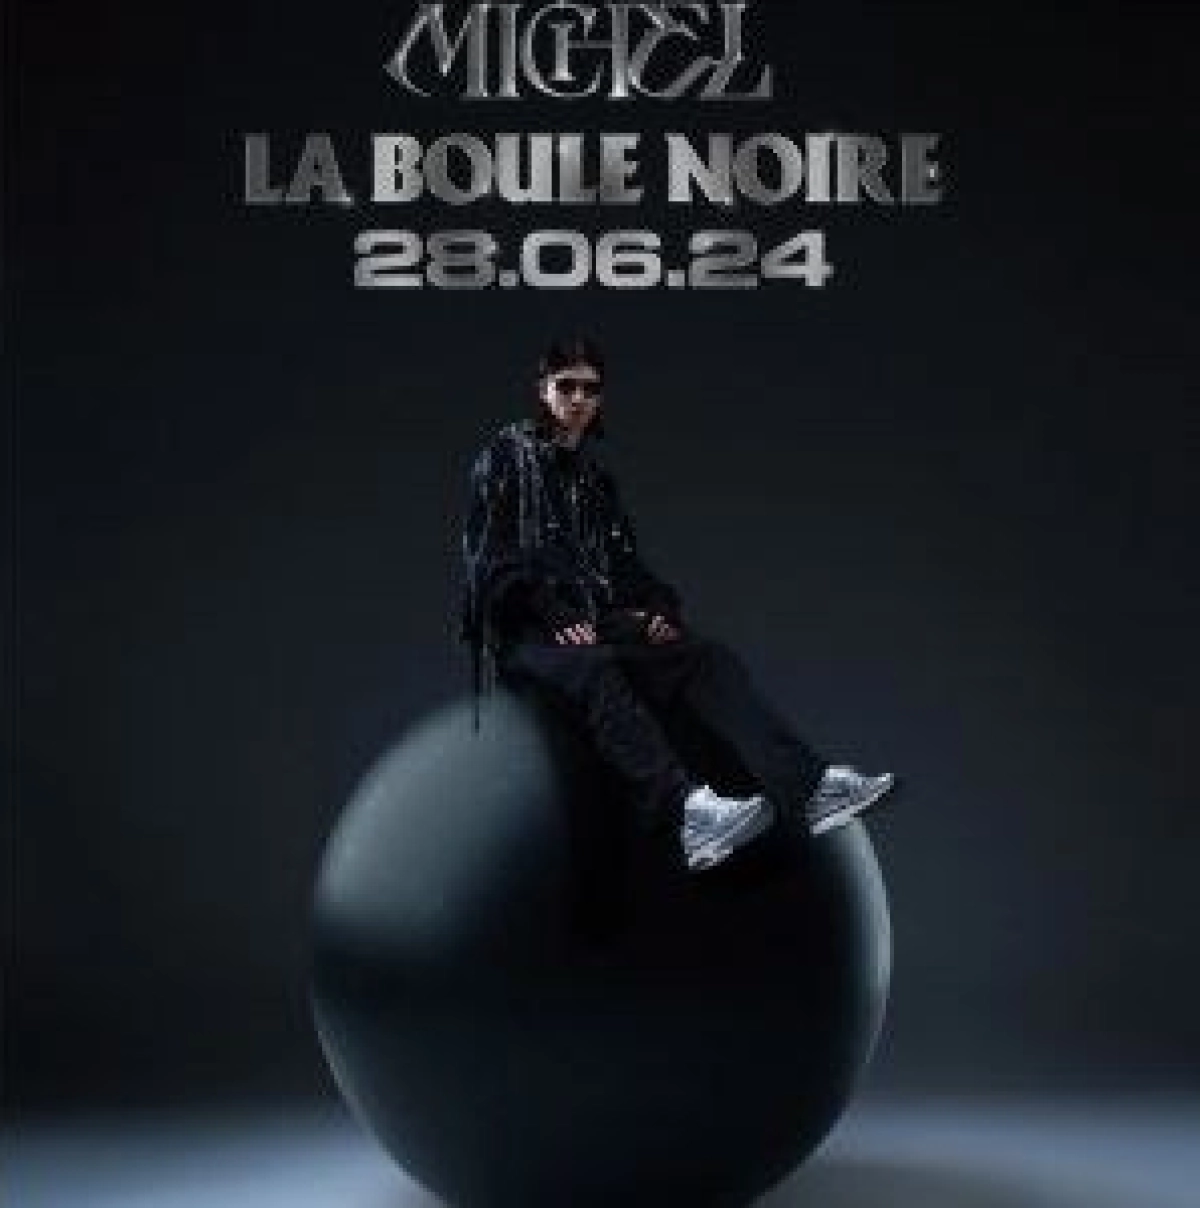 Michel at La Boule Noire Tickets